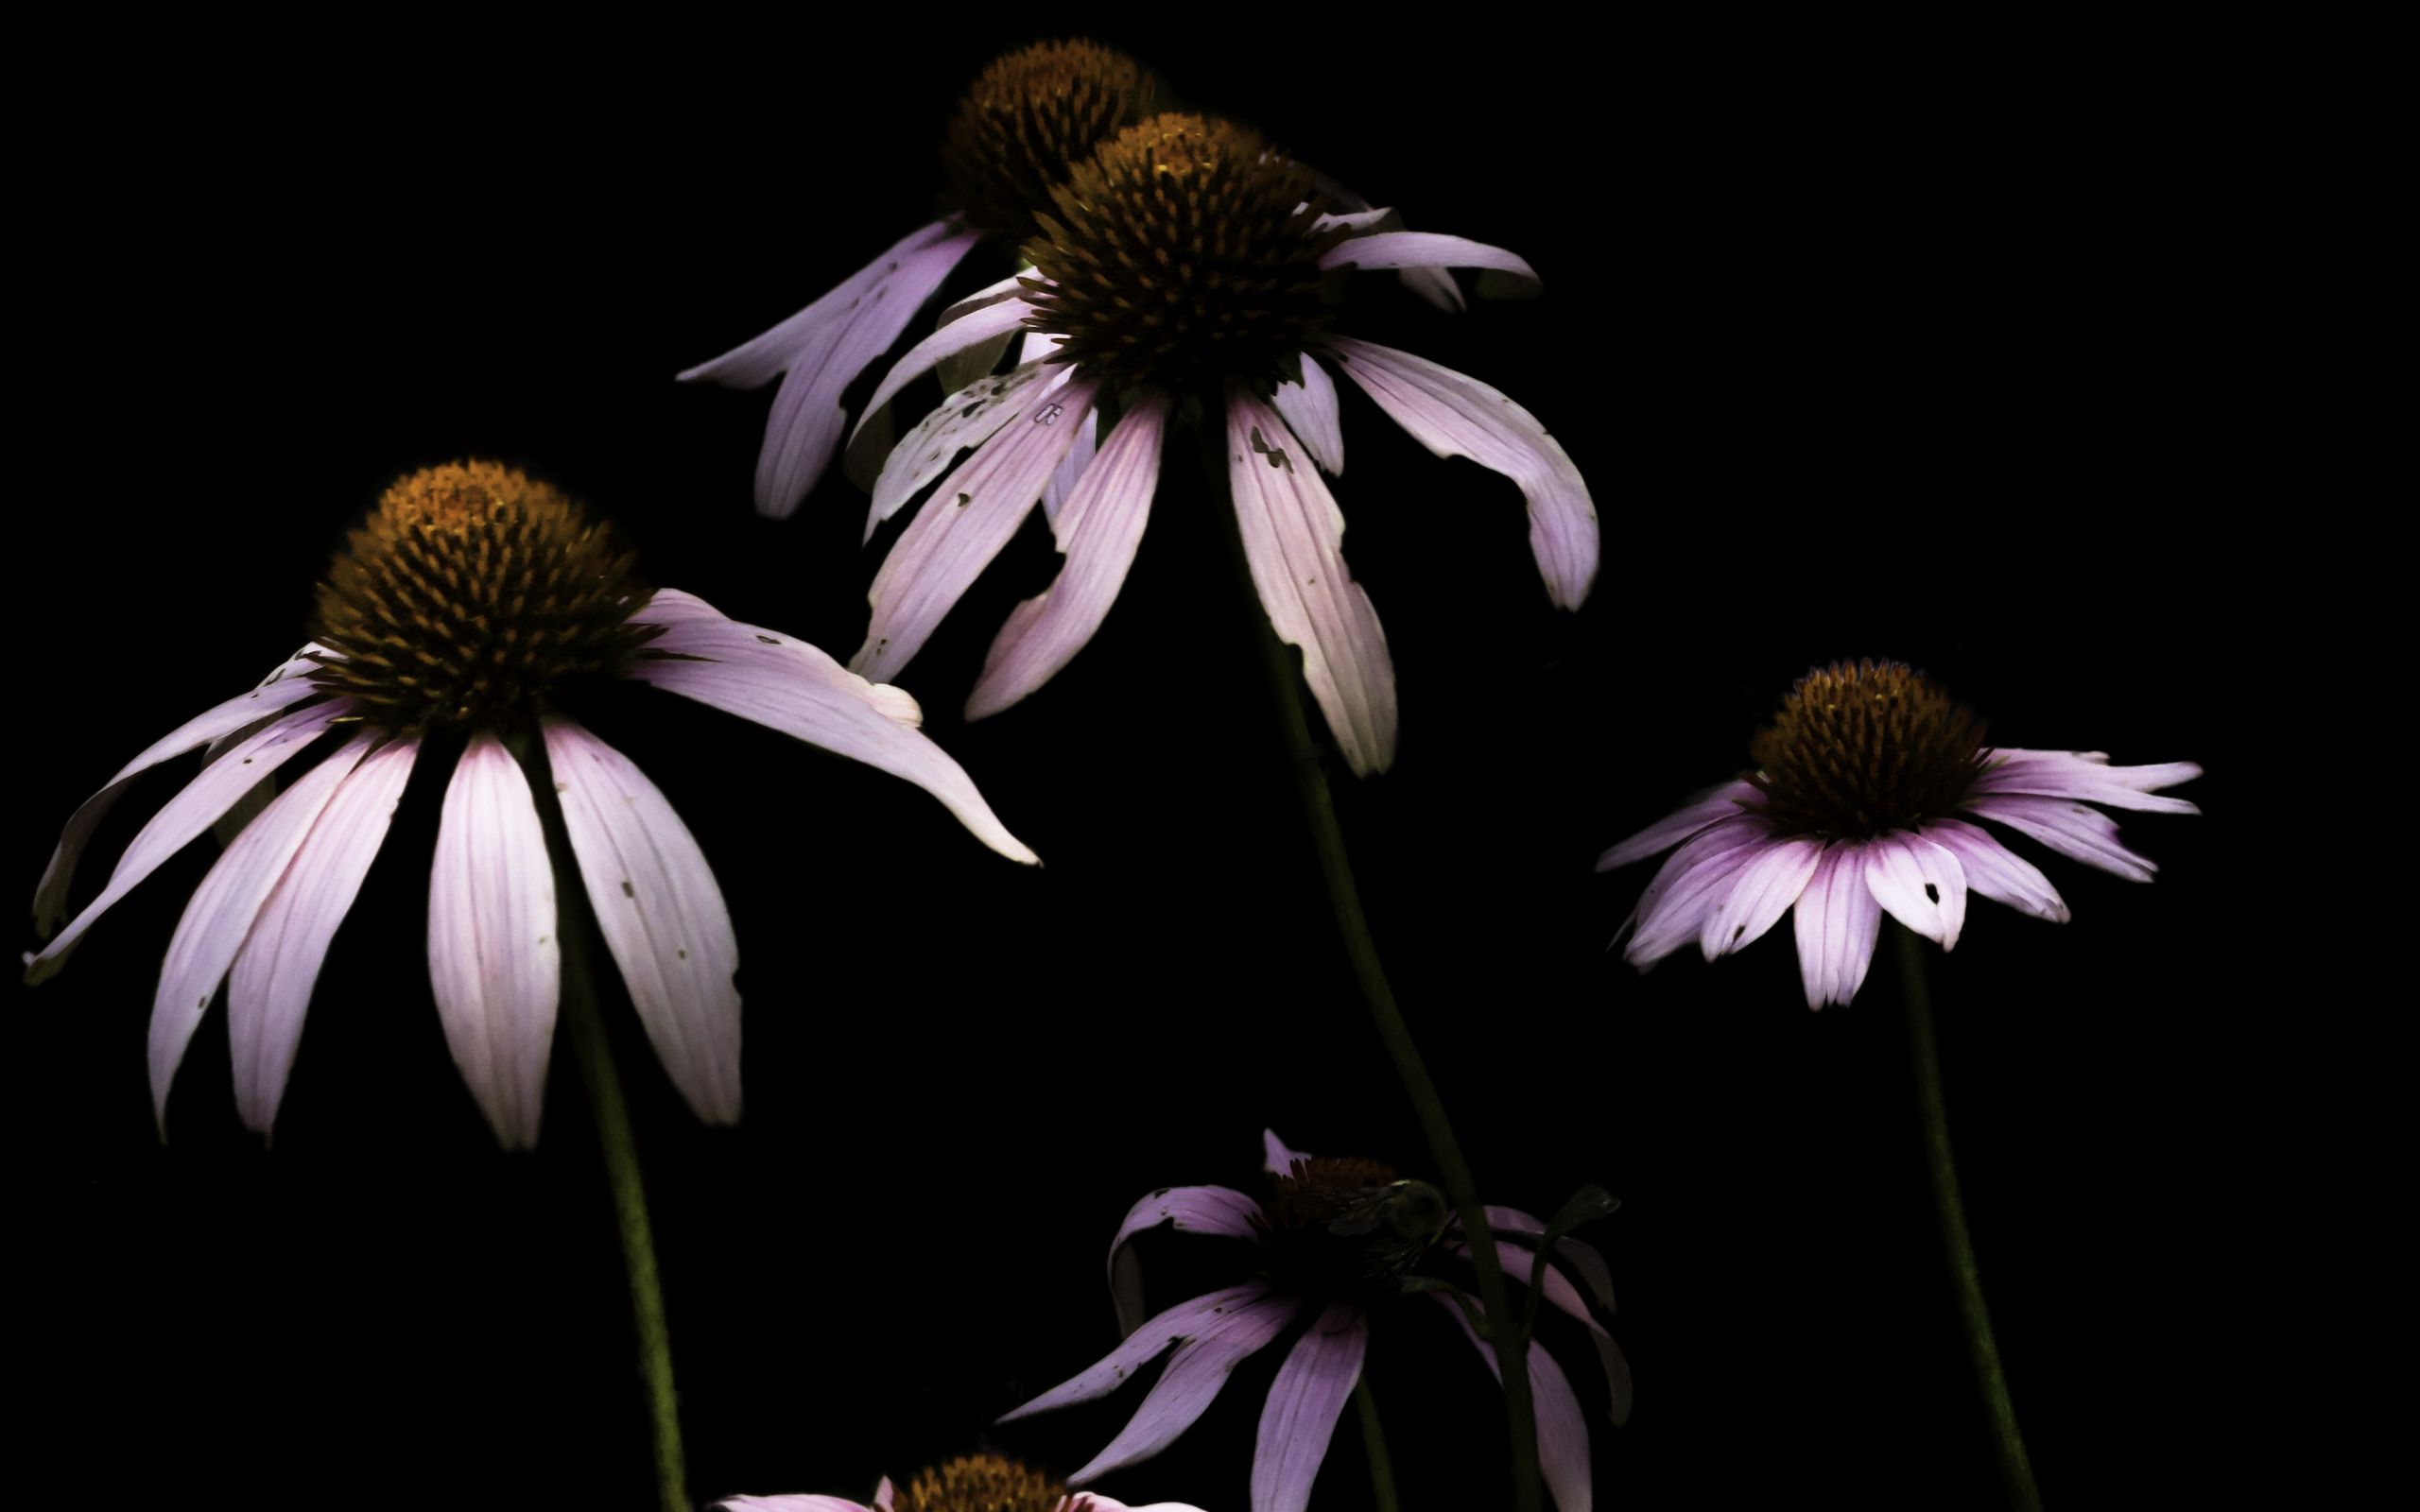 Download wallpaper 2560x1600 daisy, petals, flower, black widescreen 16:10 hd background